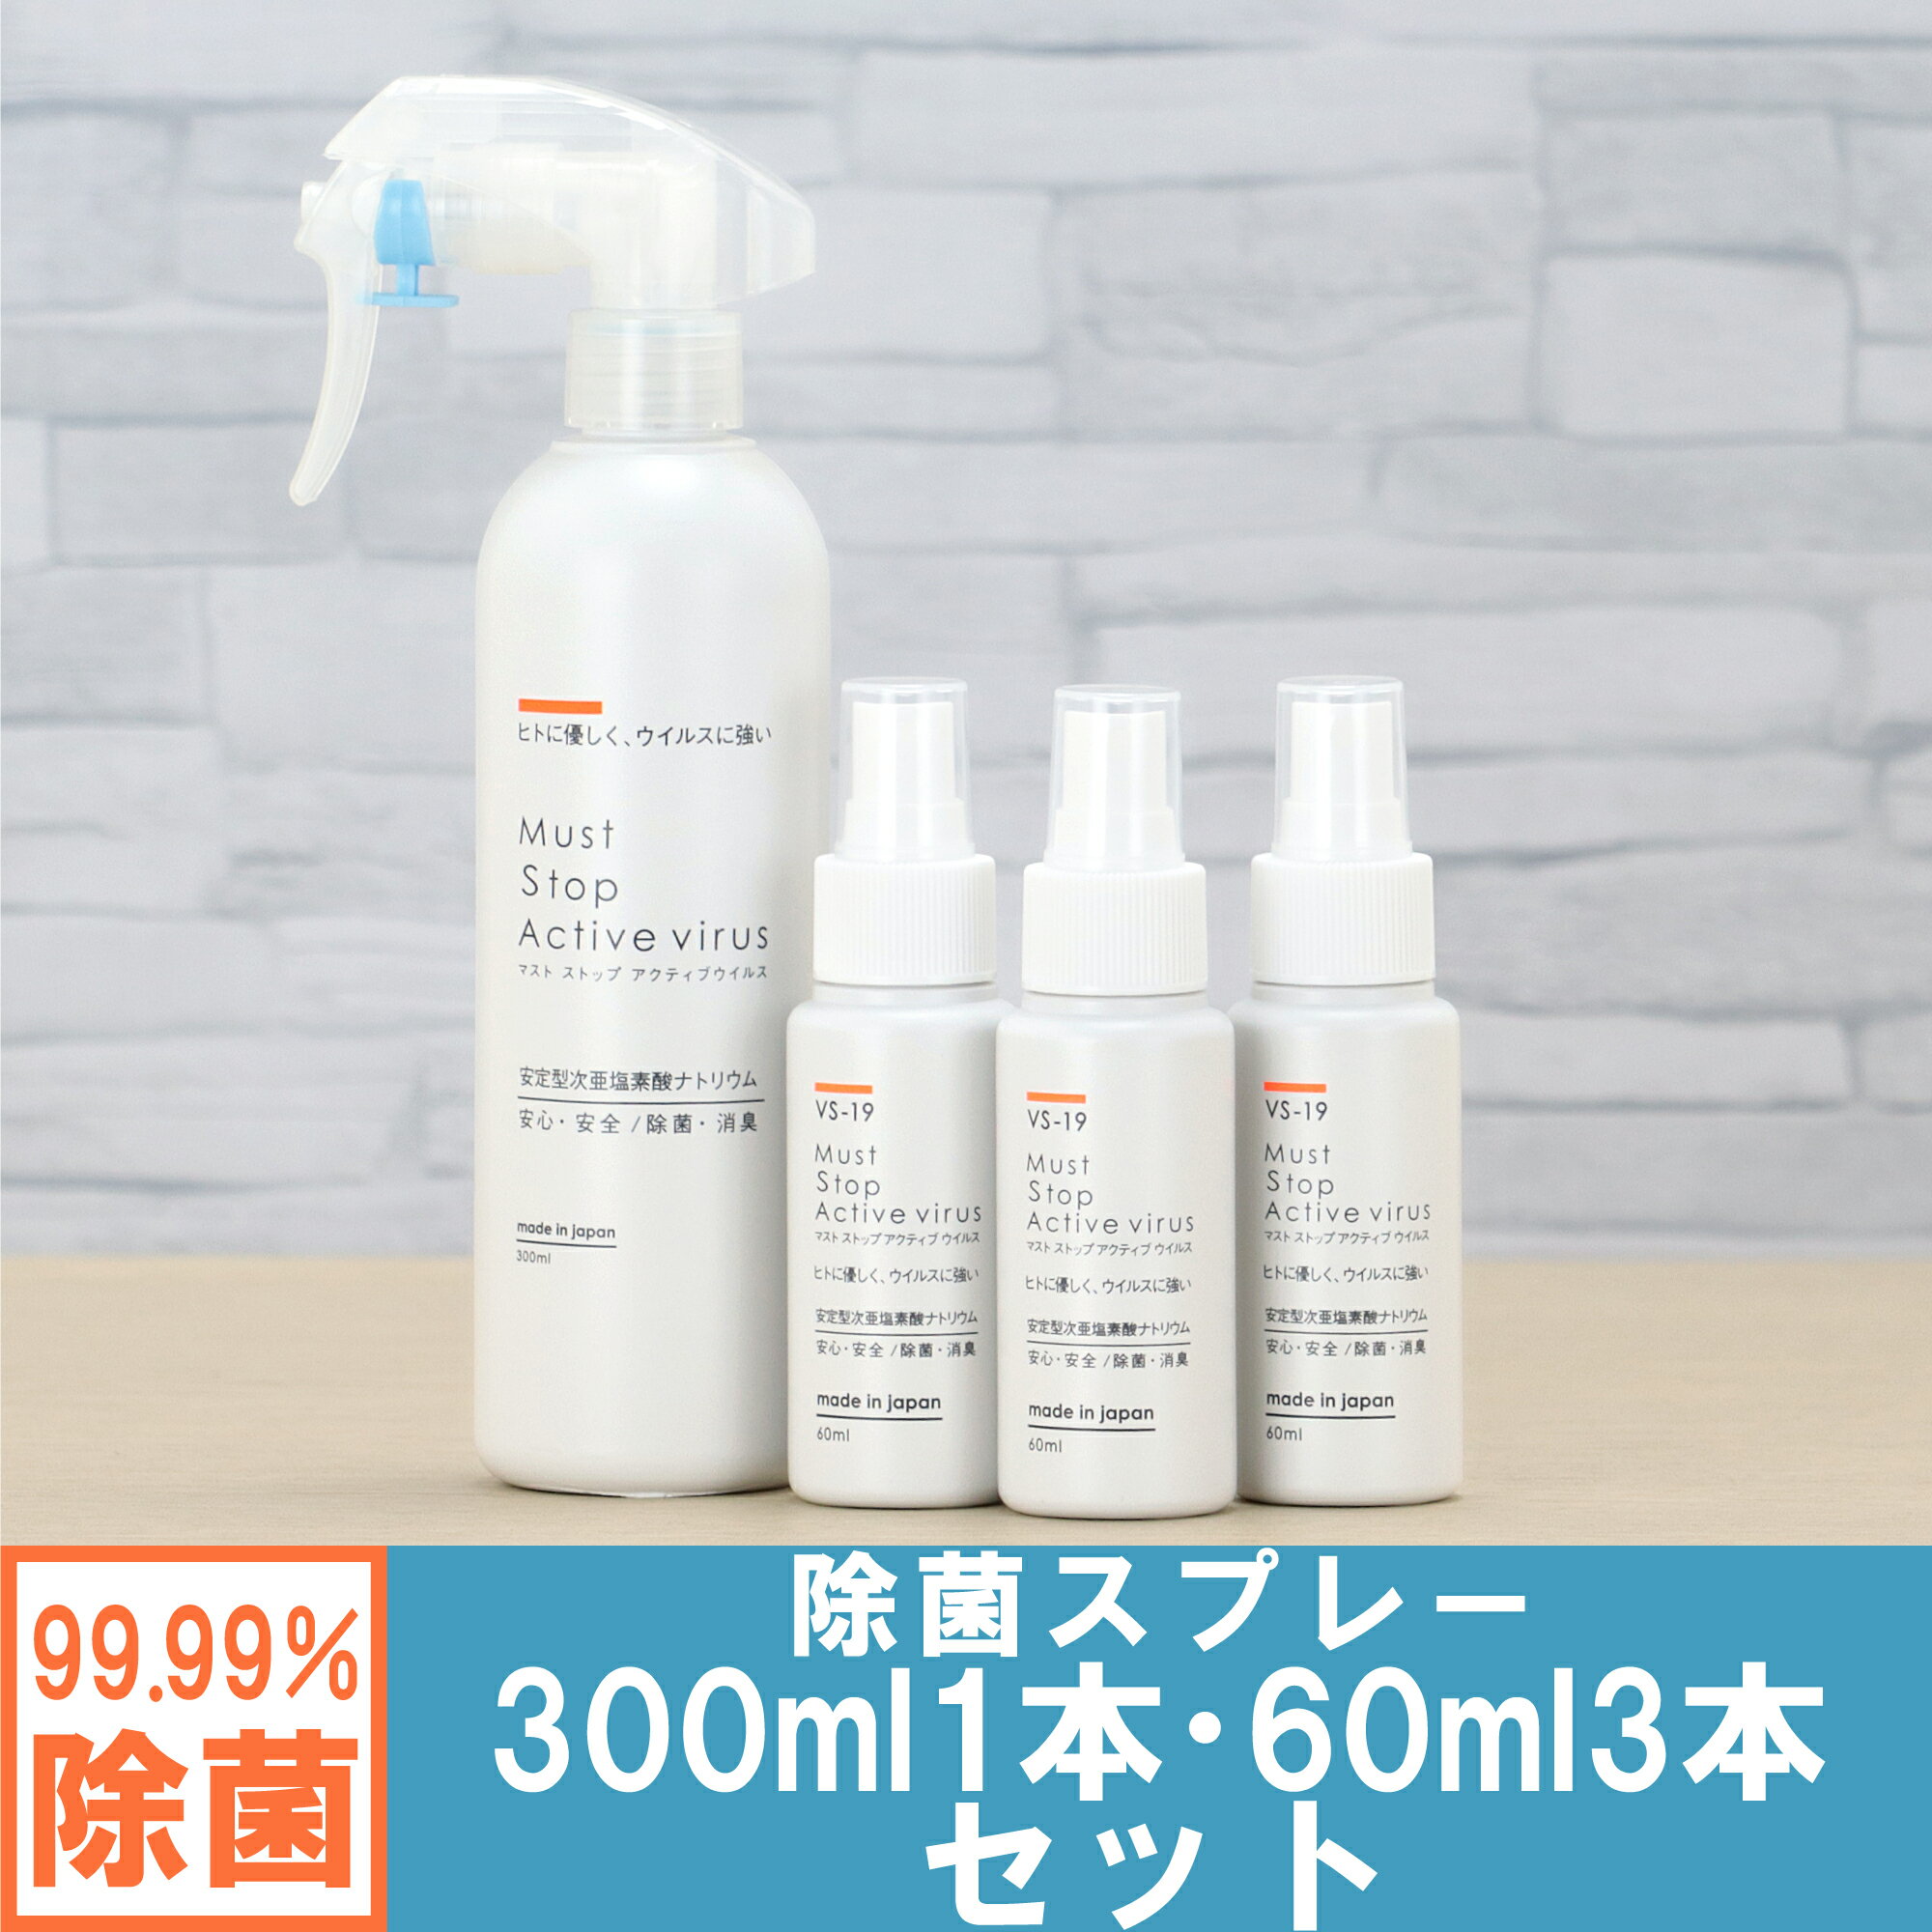 コロナにも効く 除菌スプレー (300ml×1本+60ml×3本） 99%水と同じ成分でアルコールよりも強力な除菌・消臭・低刺激を実現 マストストップアクティブウイルス 日本製